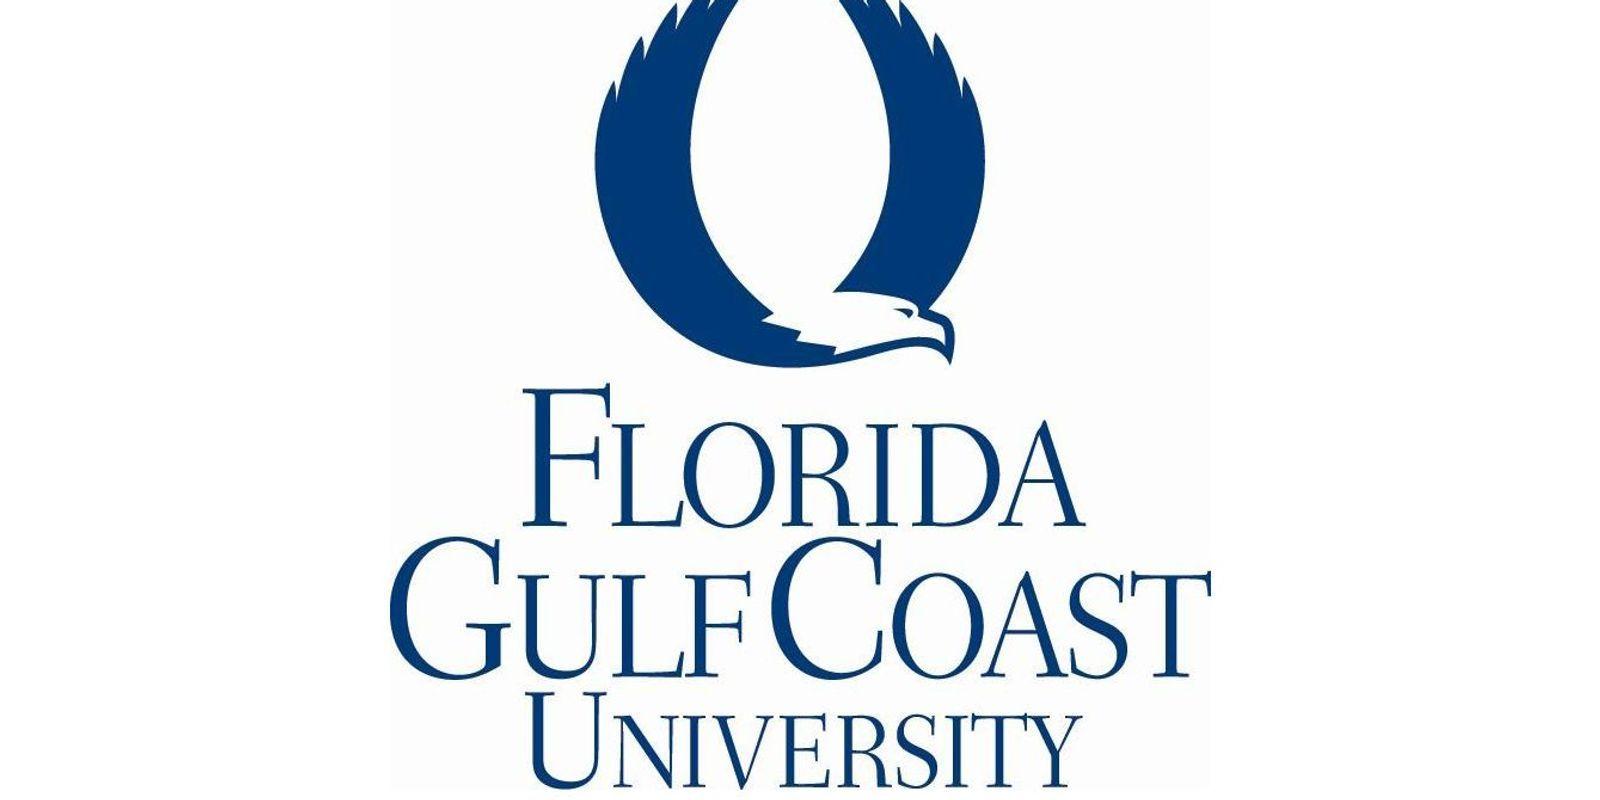 FGCU Logo - Can FGCU reach second tier of elite Florida universities?